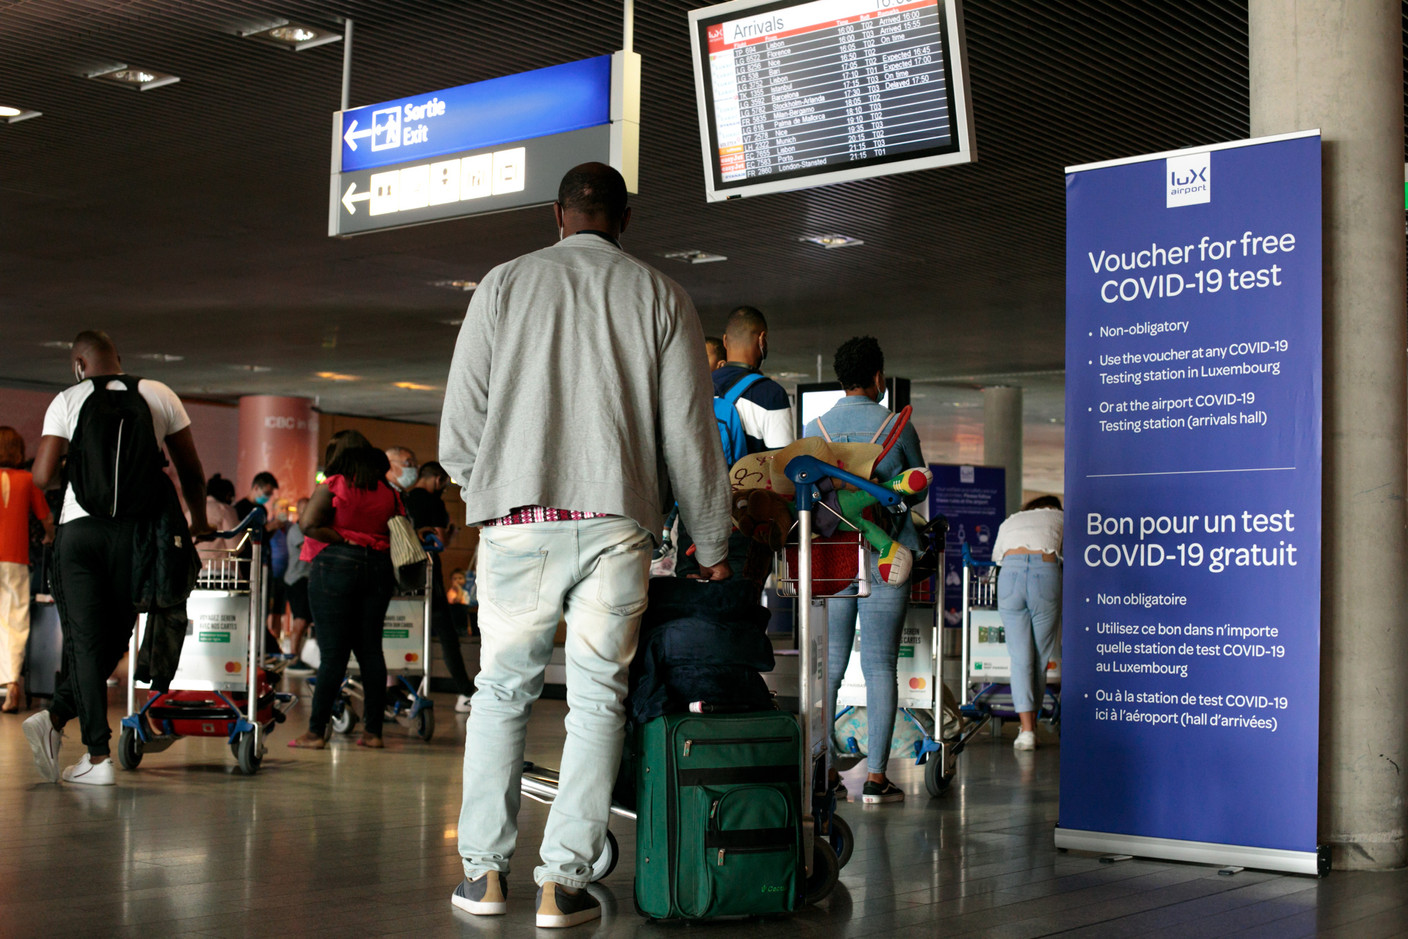 Masqués et à distance, les passagers attendent leurs bagages. (Photo: Matic Zorman / Maison Moderne)